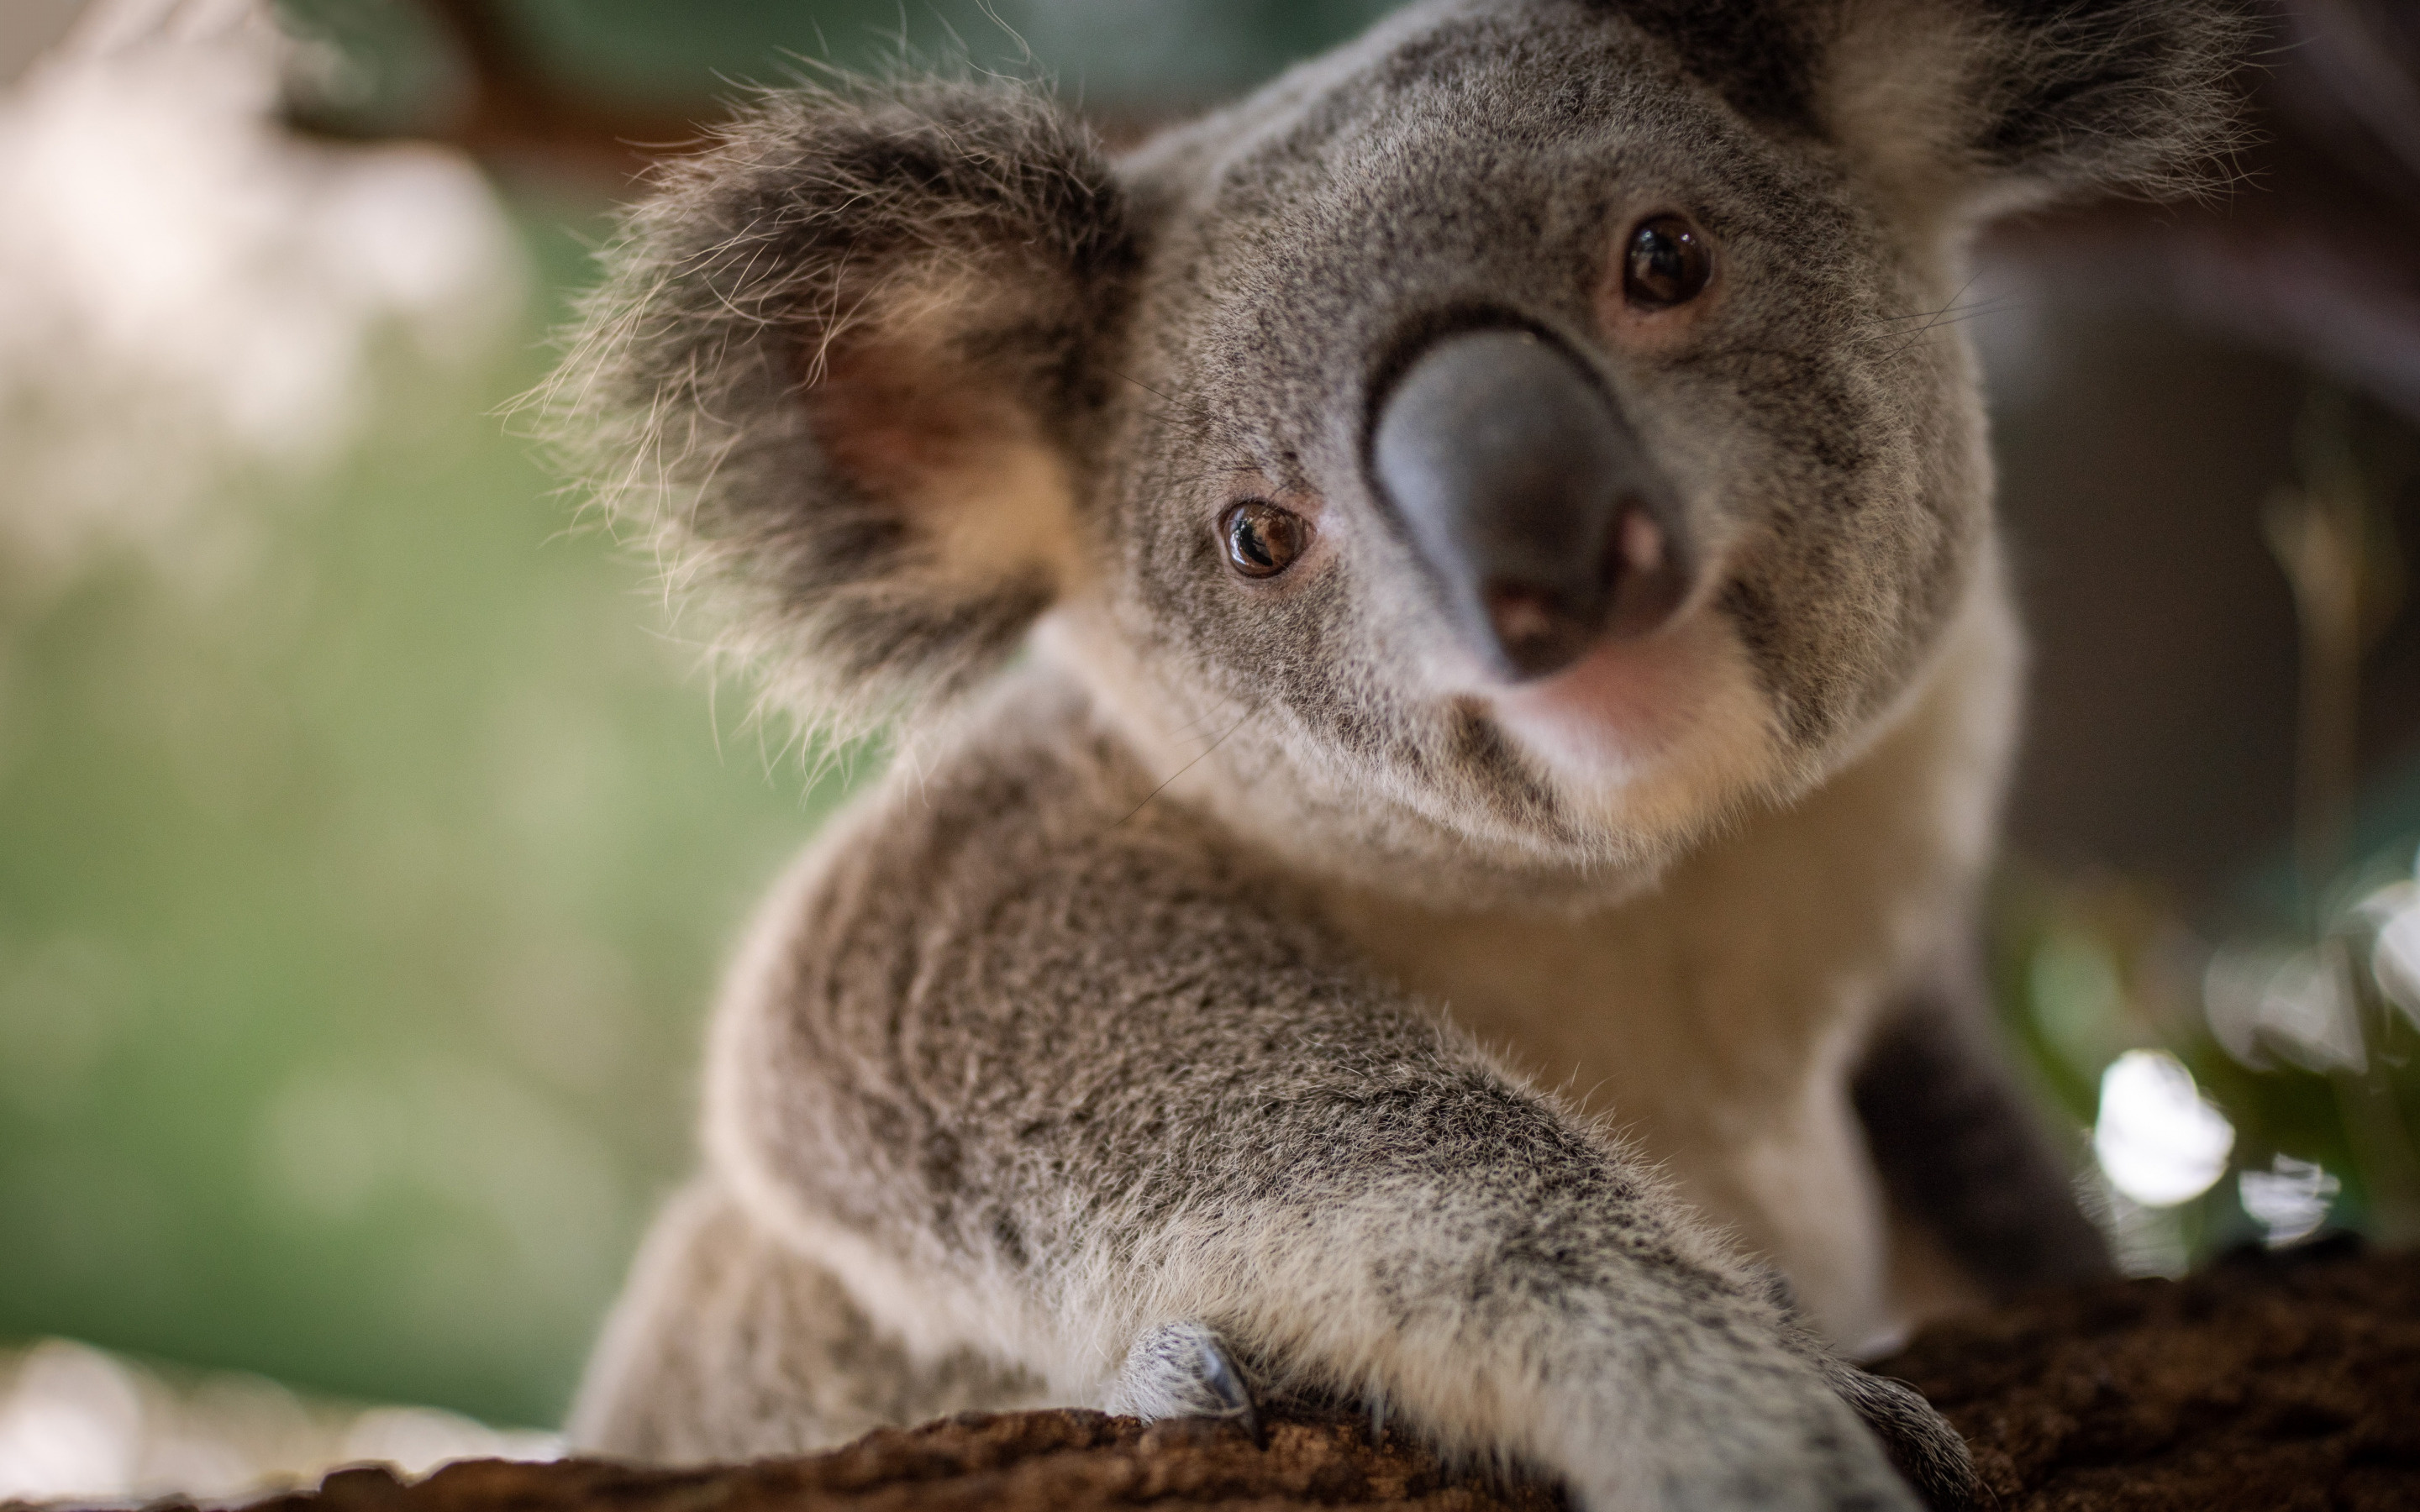 Cute koala wallpapers, Wild animal beauty, Desktop enhancement, High-quality images, 2880x1800 HD Desktop